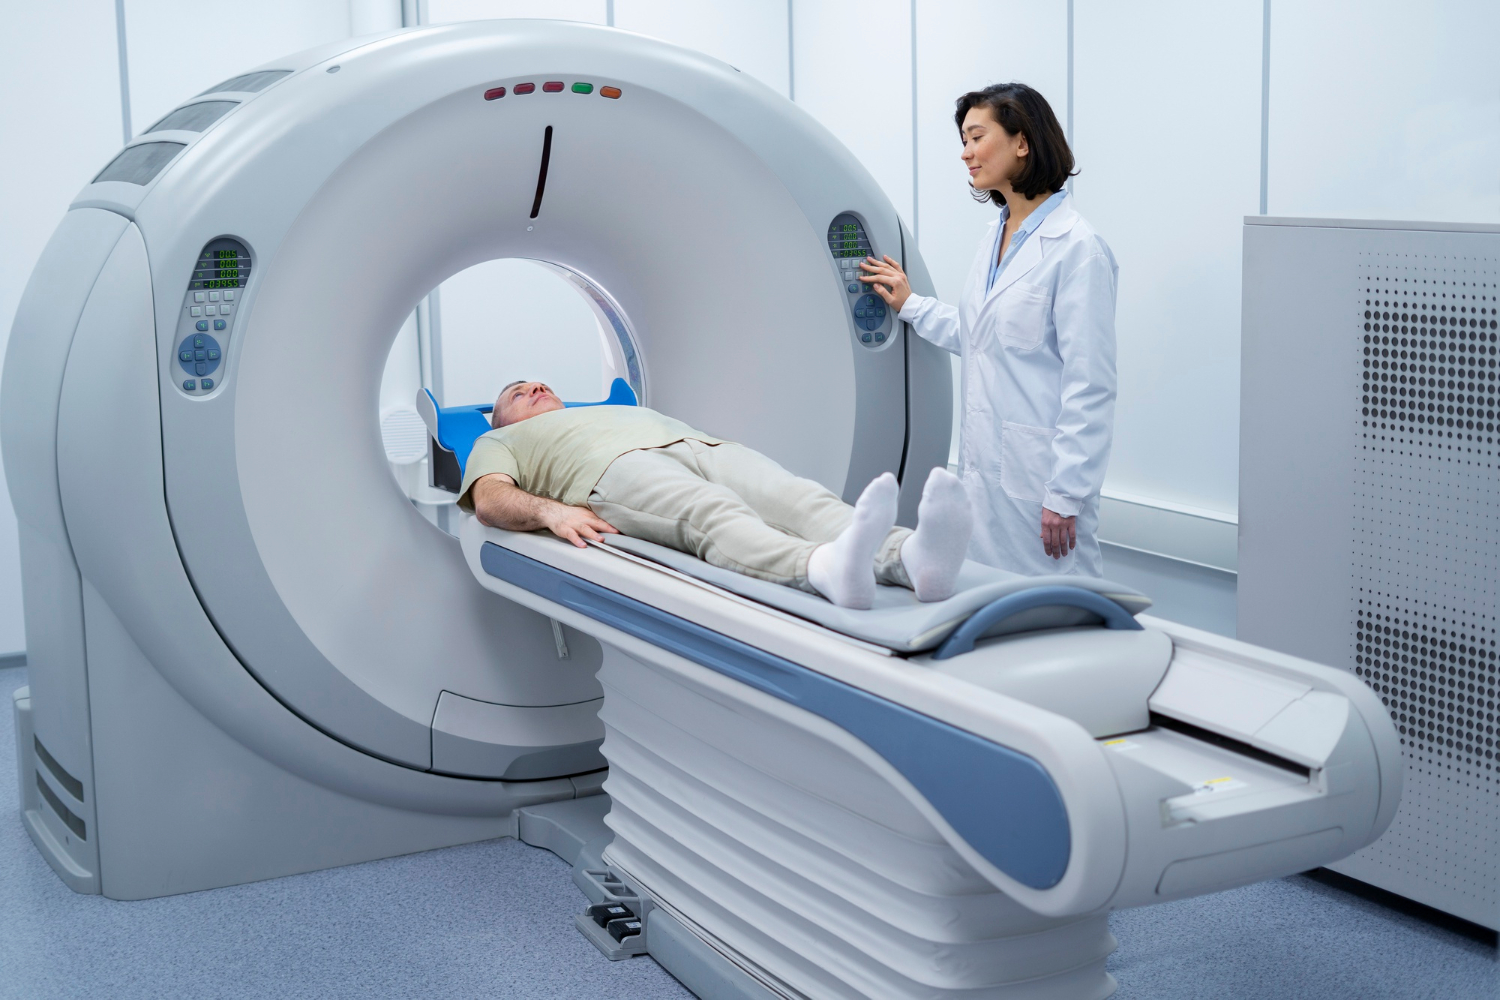 Getting an MRI